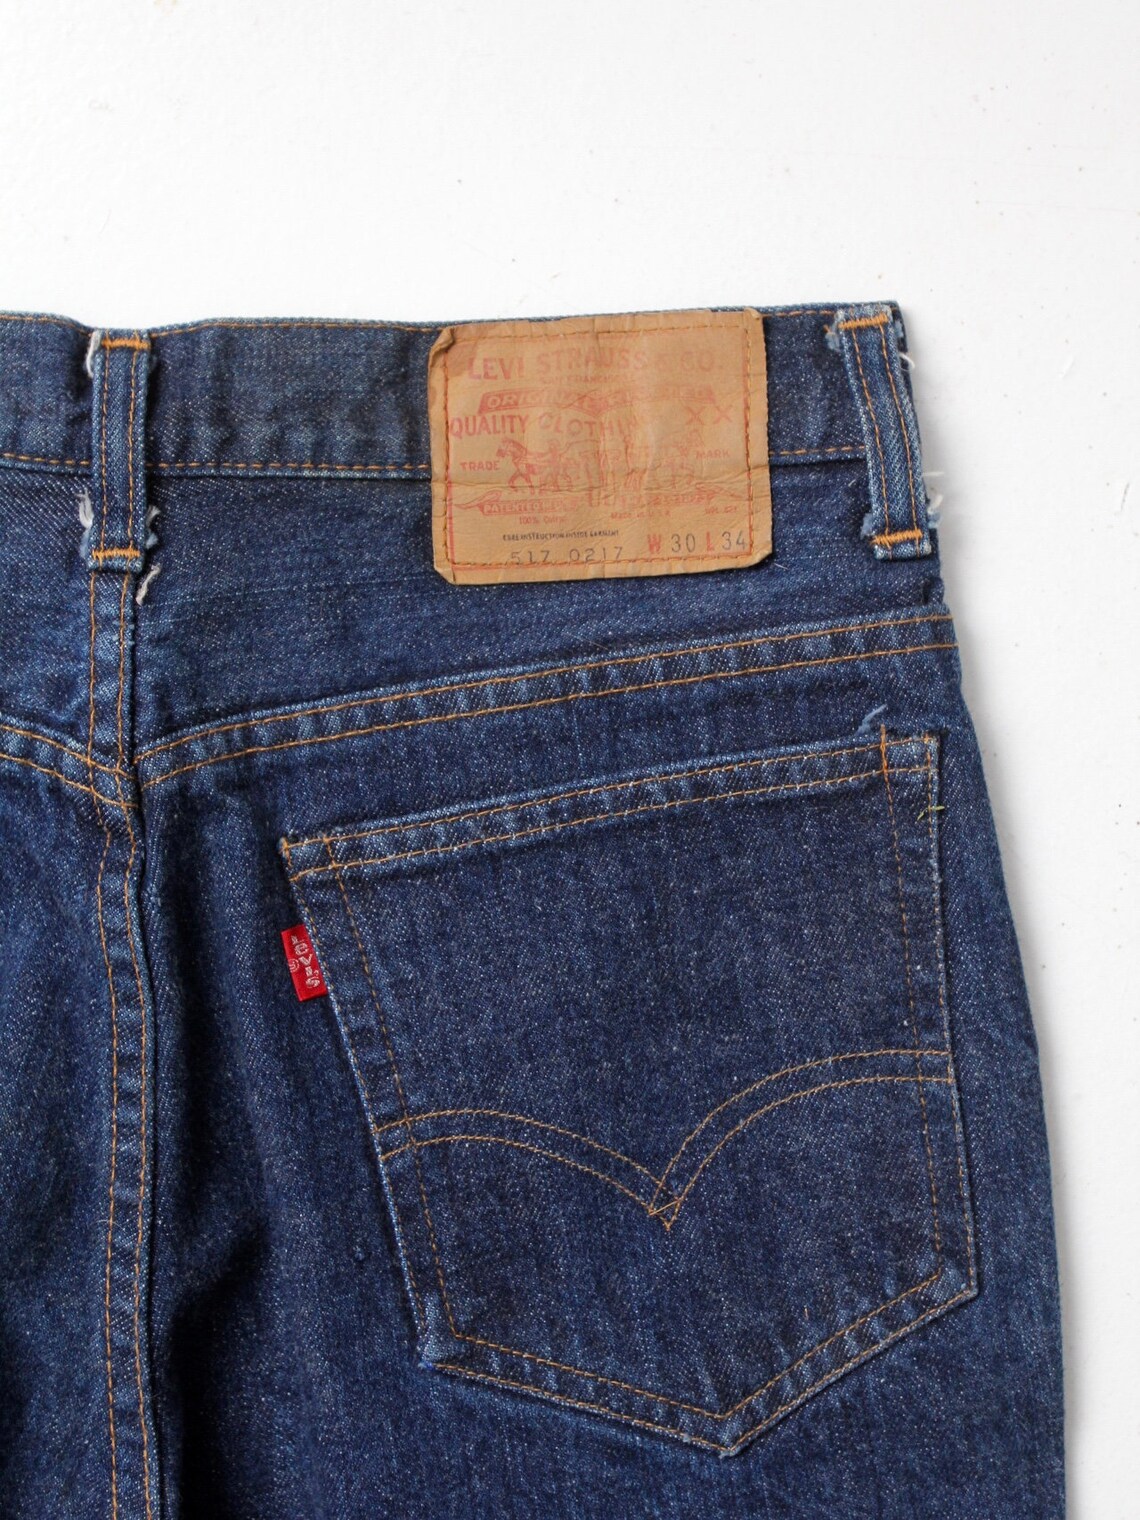 Vintage Levis 517 Denim Jeans High Waist Bootcut Jeans - Etsy